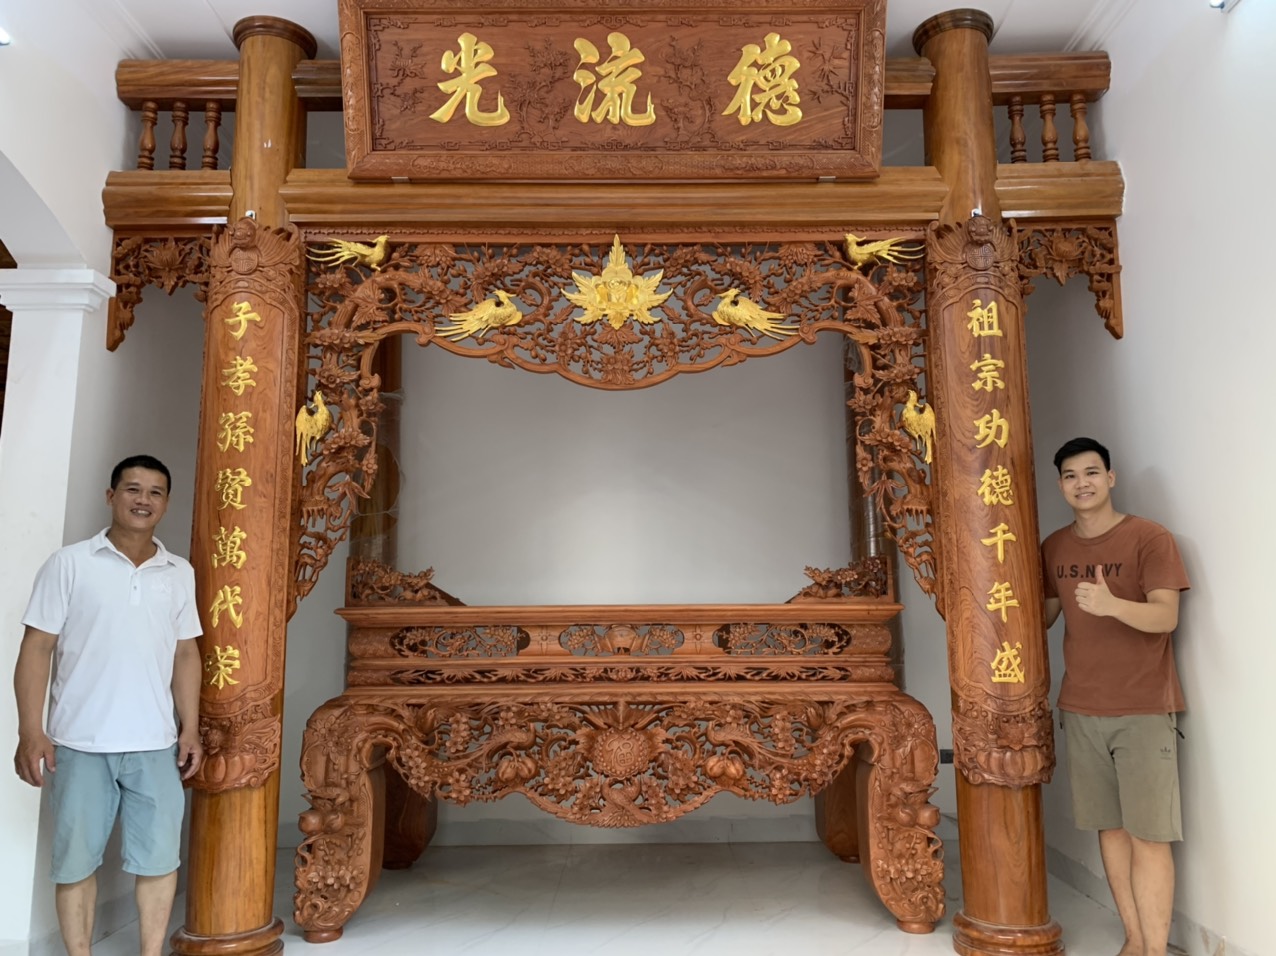 vua sap tho mai dieu go huong da chan 26 3 - Có bao nhiêu loại sập thờ gỗ hương phổ biến hiện nay?